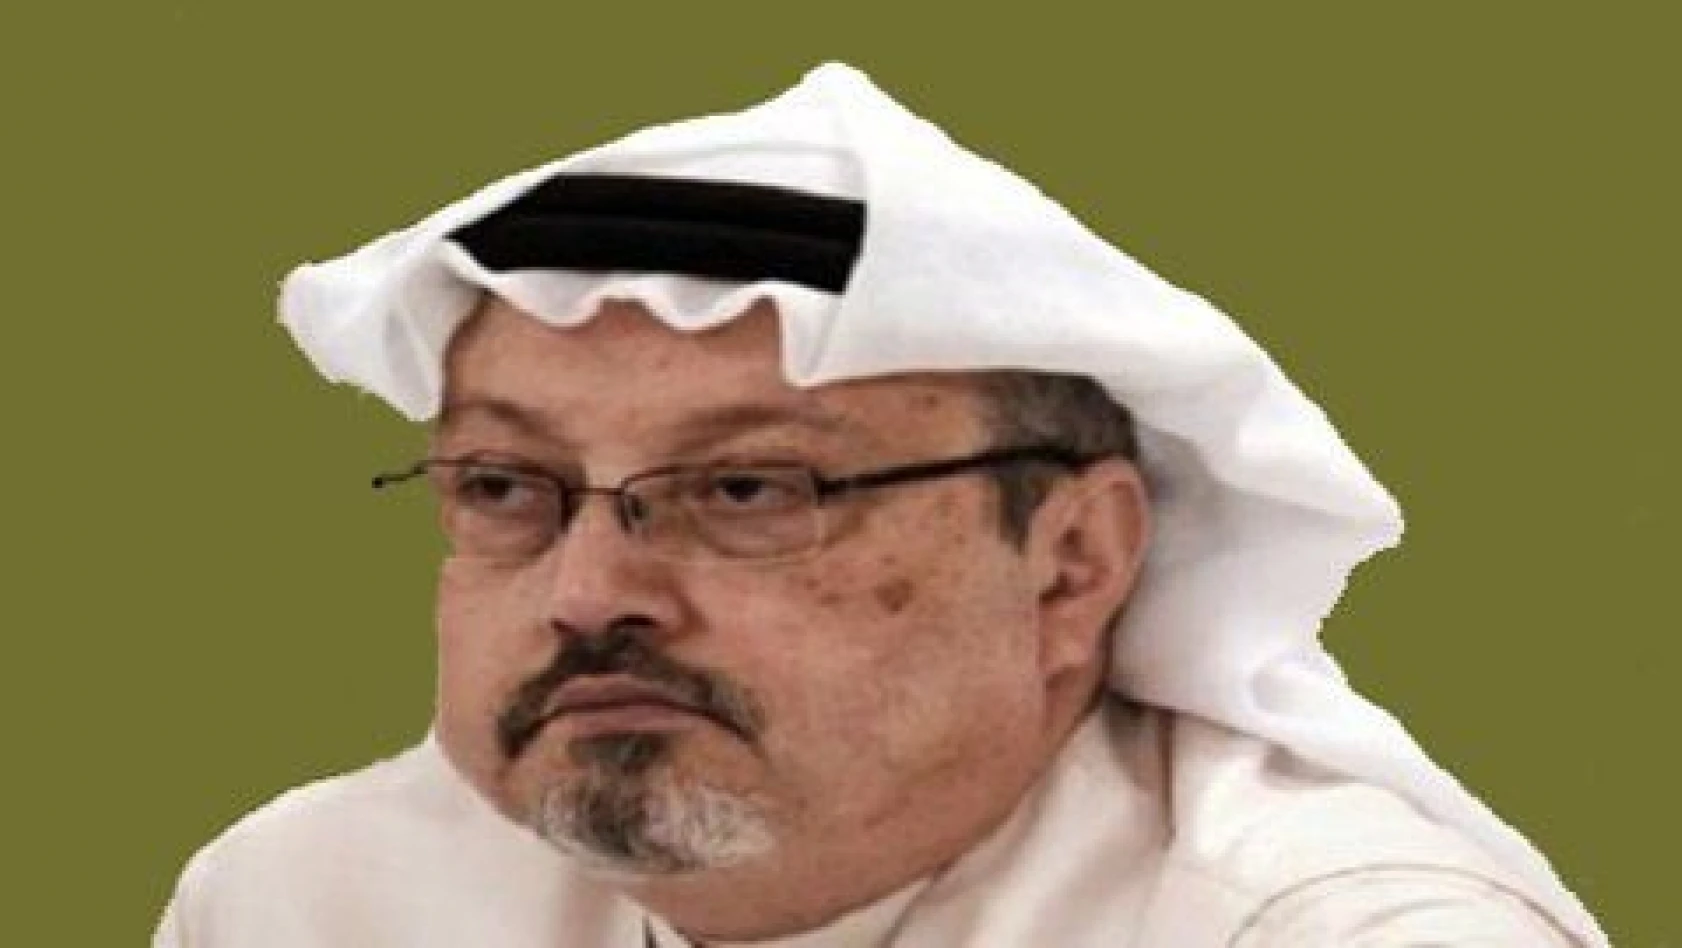 Kaybolan Suudi Gazeteci Kaşıkçı'nın Kayserili olduğu iddia edildi